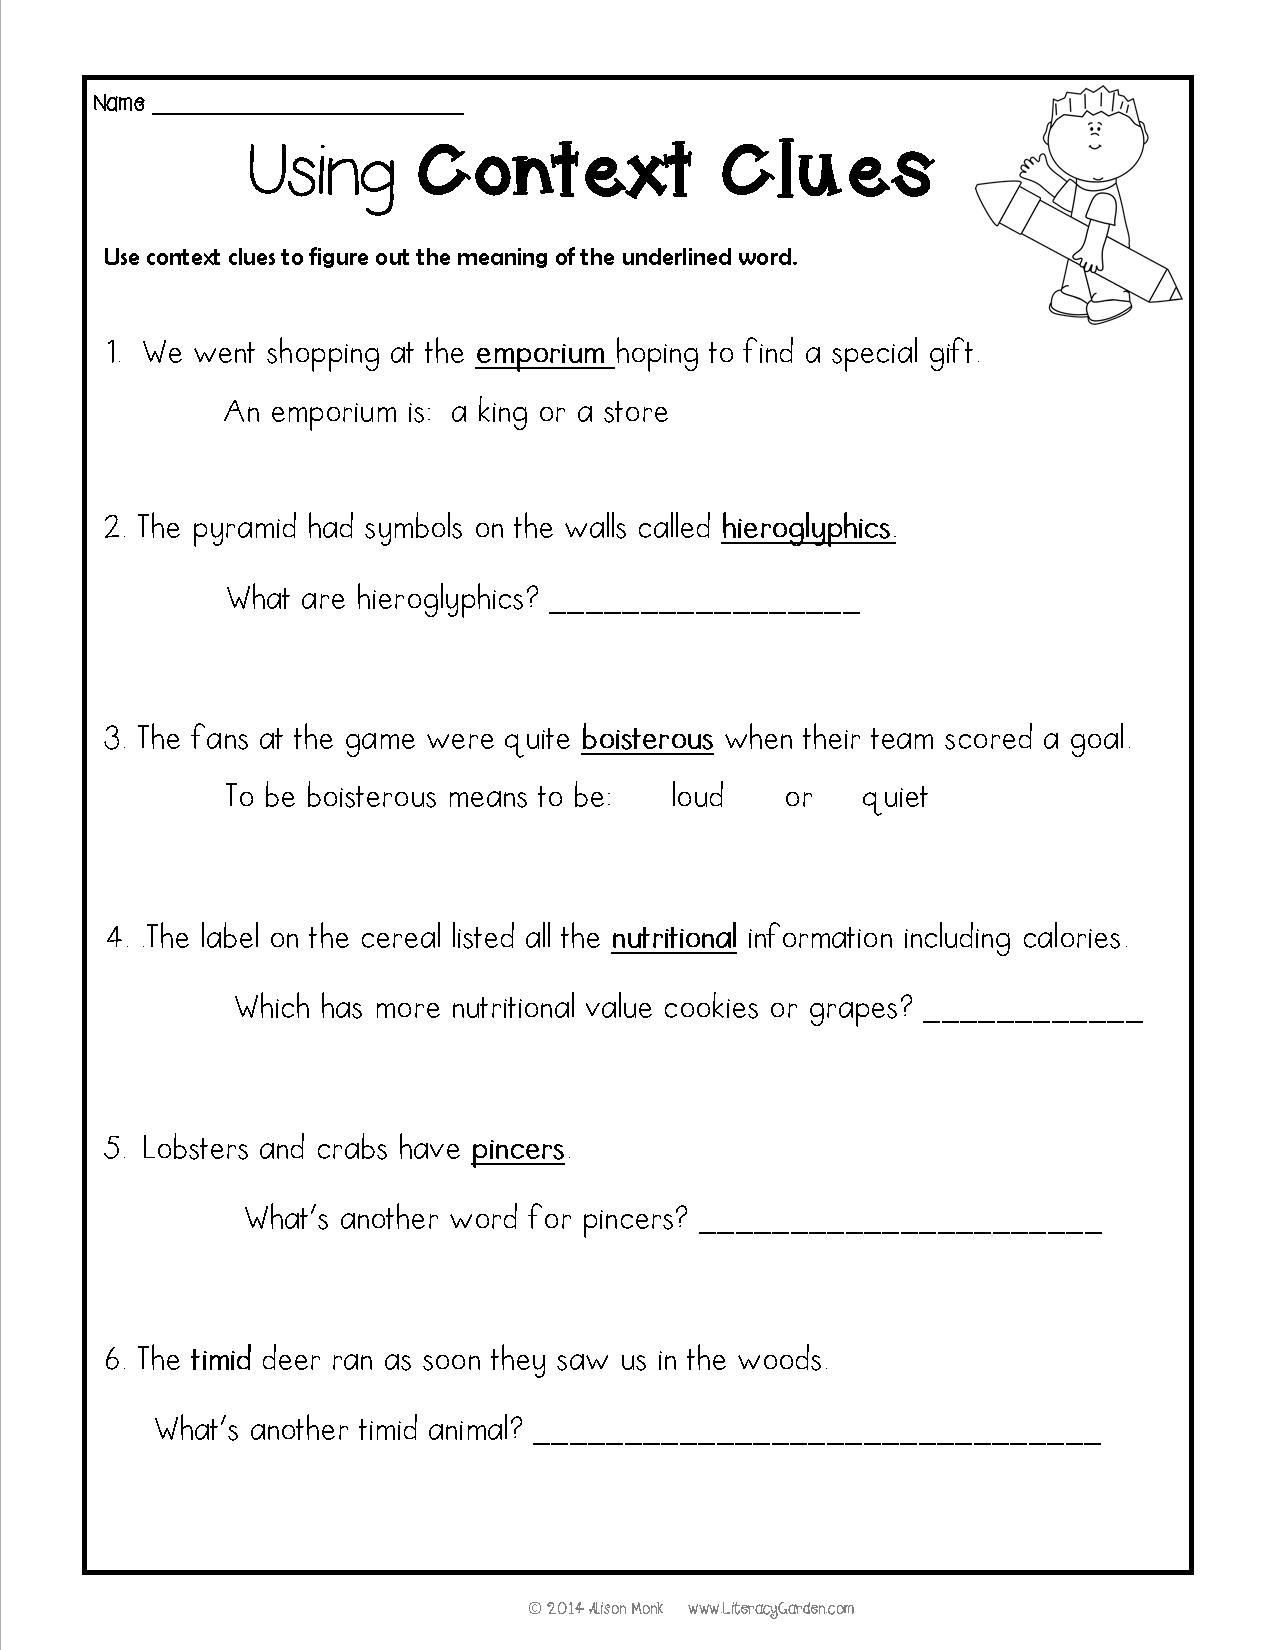 Context Clues Worksheets Second Grade Context Clues Worksheets Grade 2